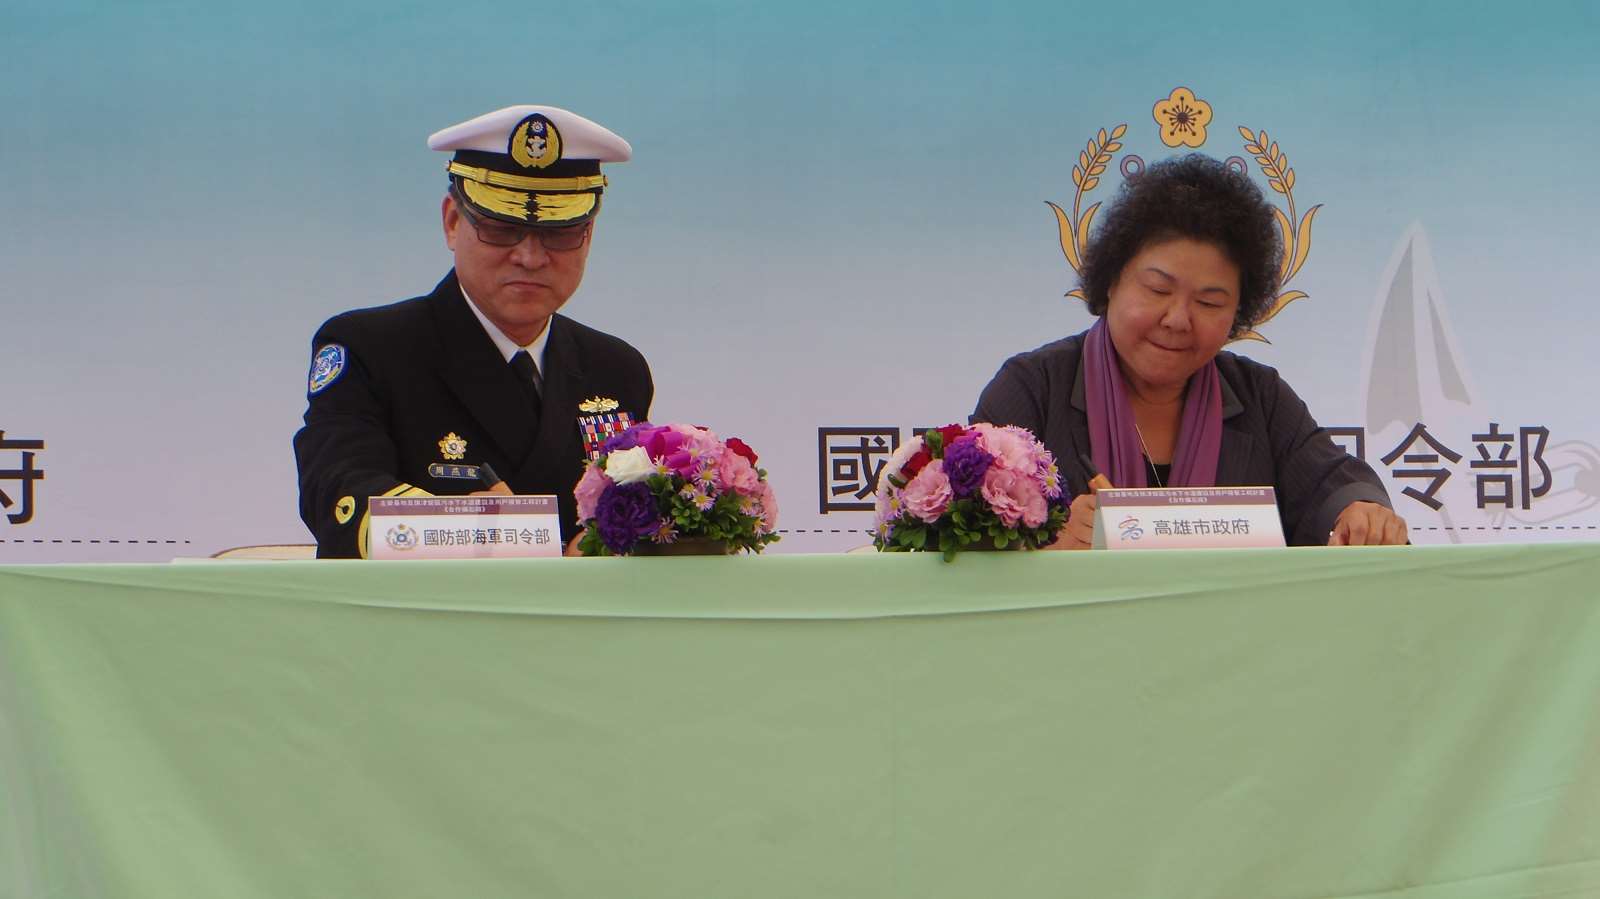 保指部指揮官周燕龍將軍及高雄市長陳菊女士共同簽署合約